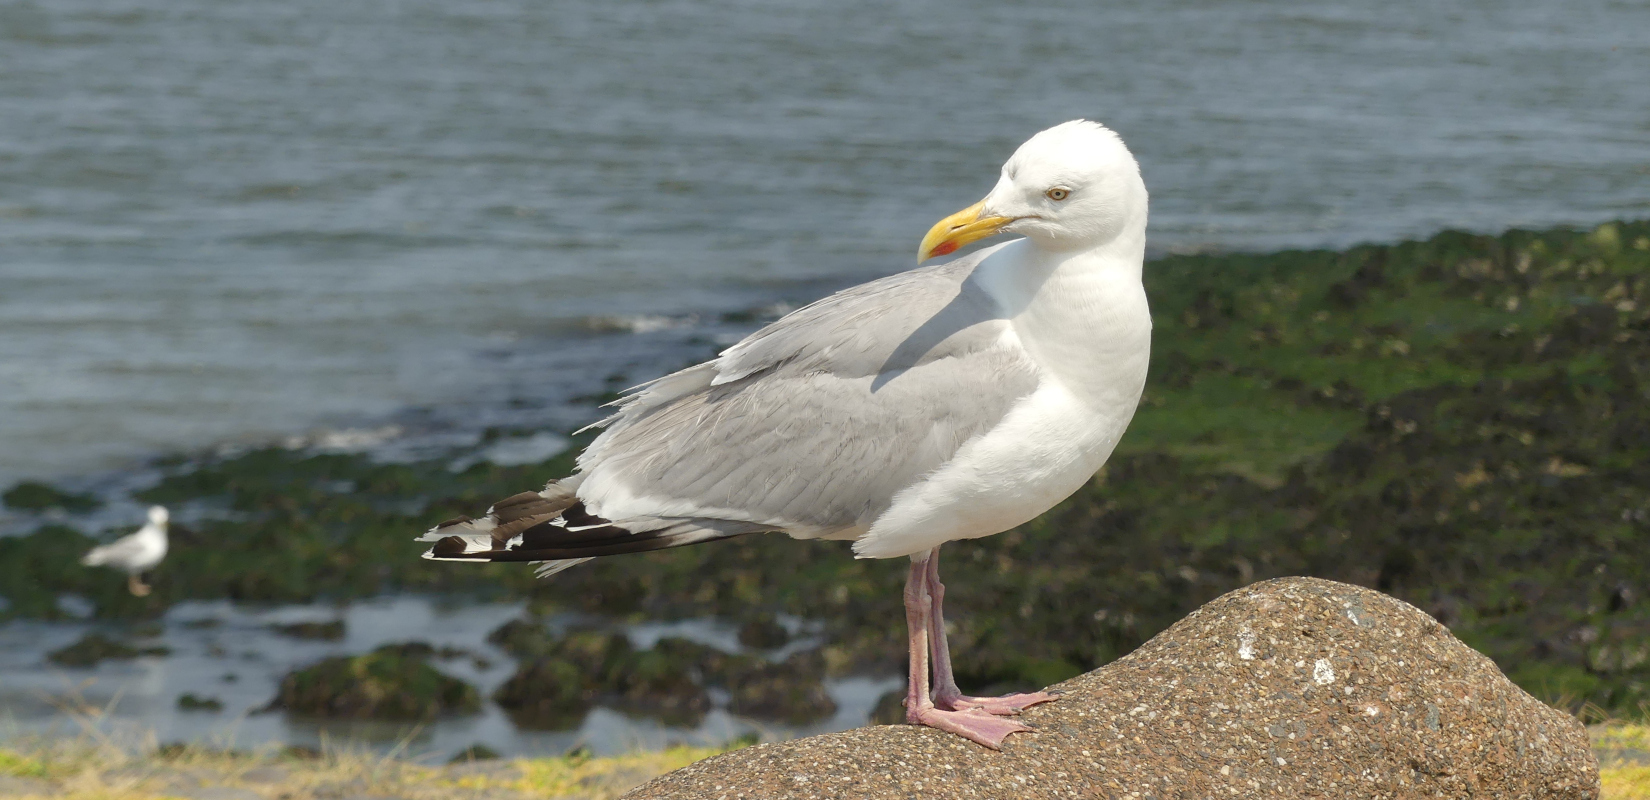 A herring gull sitting on a stone